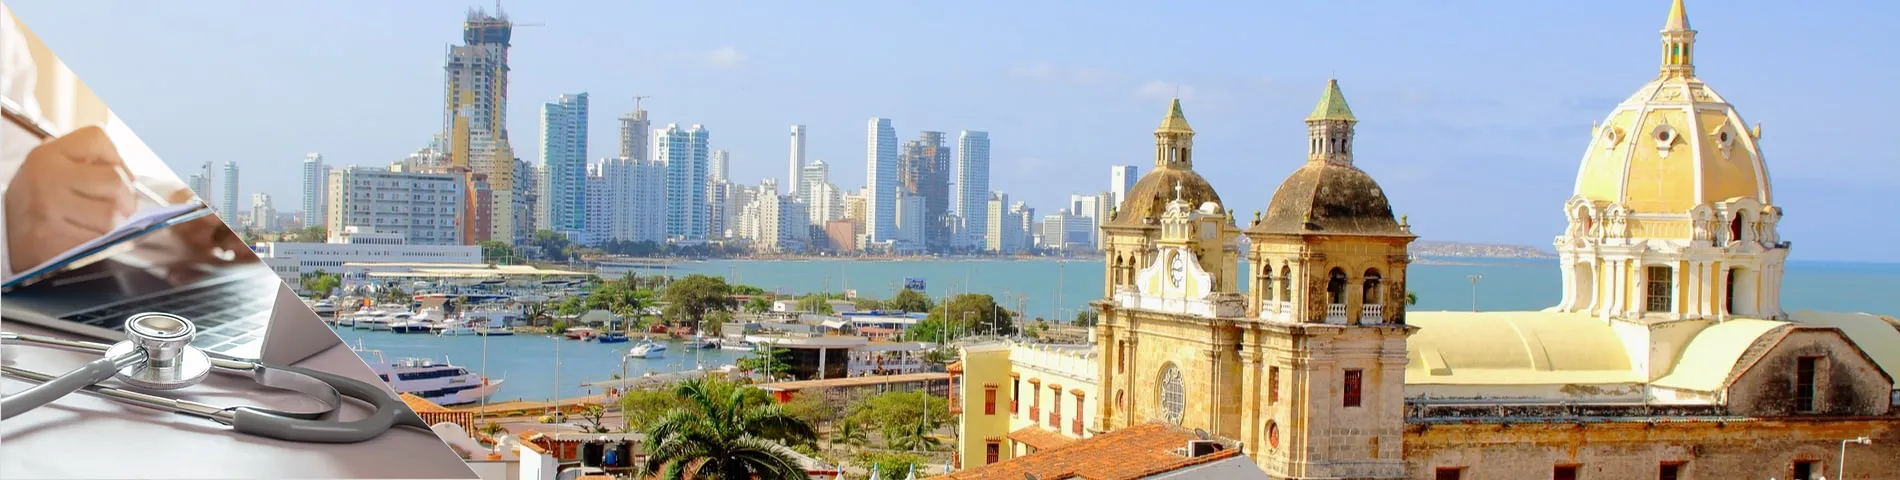 Cartagena - Španělština pro Doktory a sestry